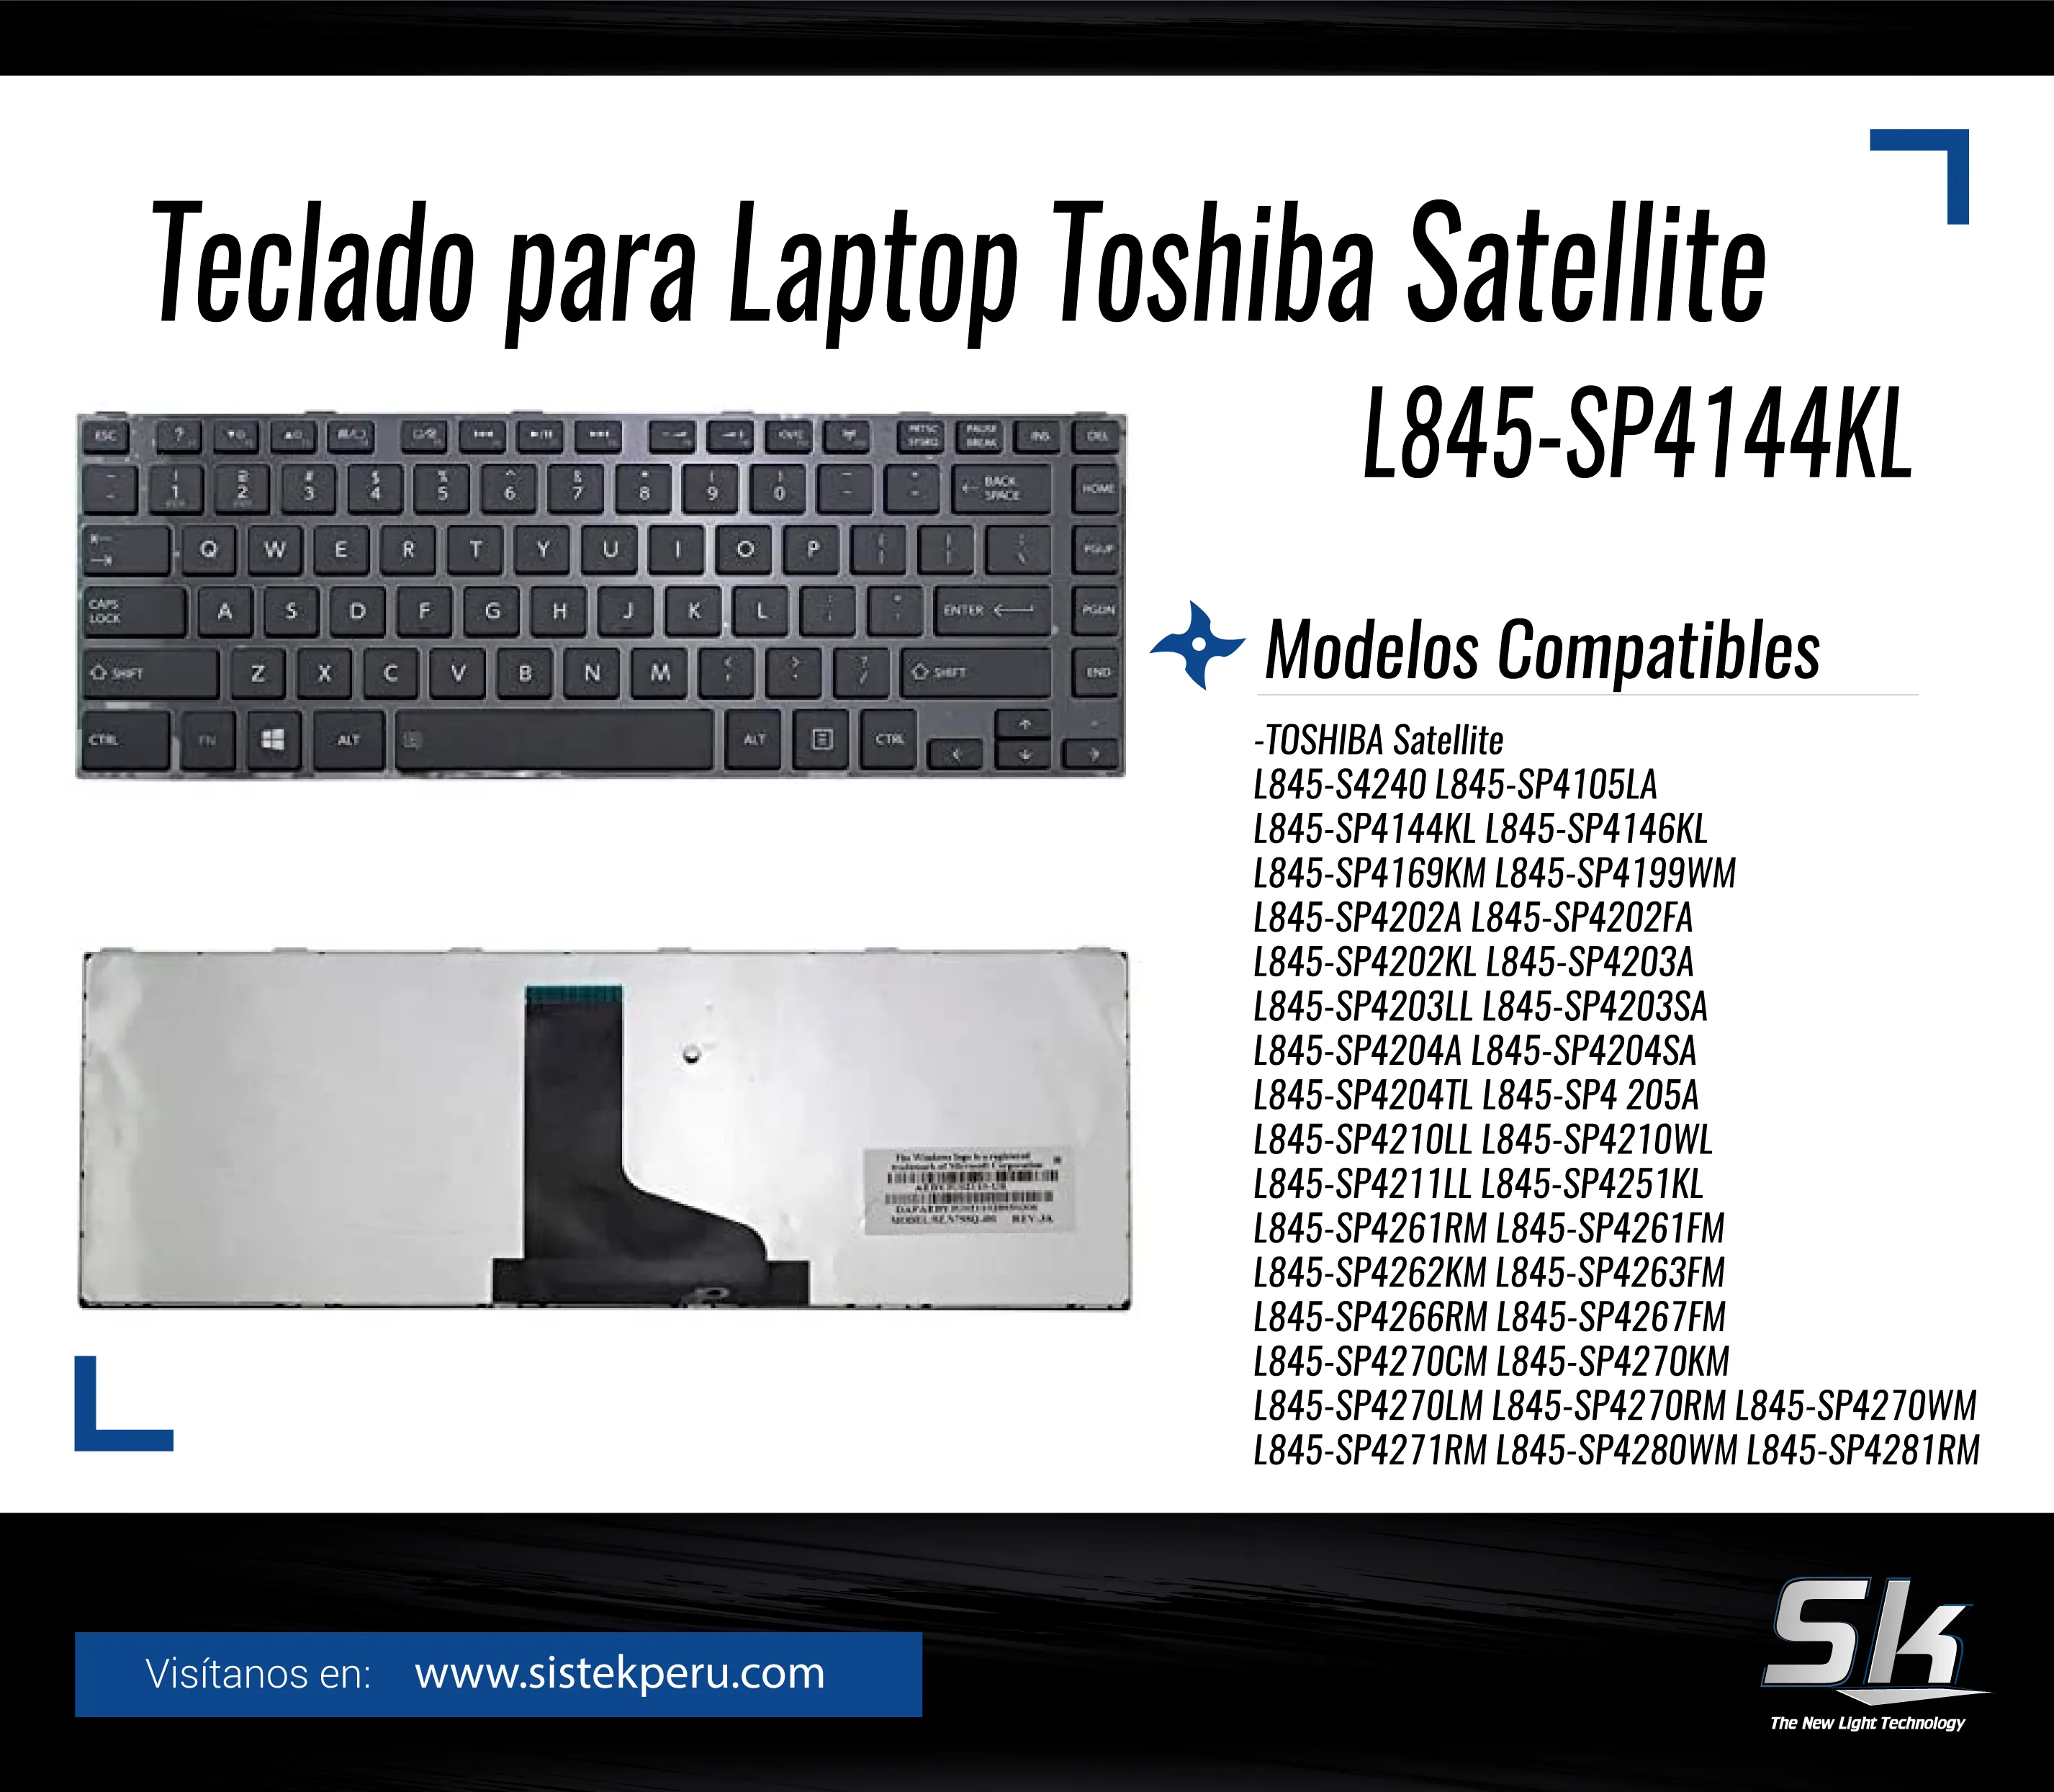 Teclado Laptop Toshiba Satellite L845-SP4144KL-x